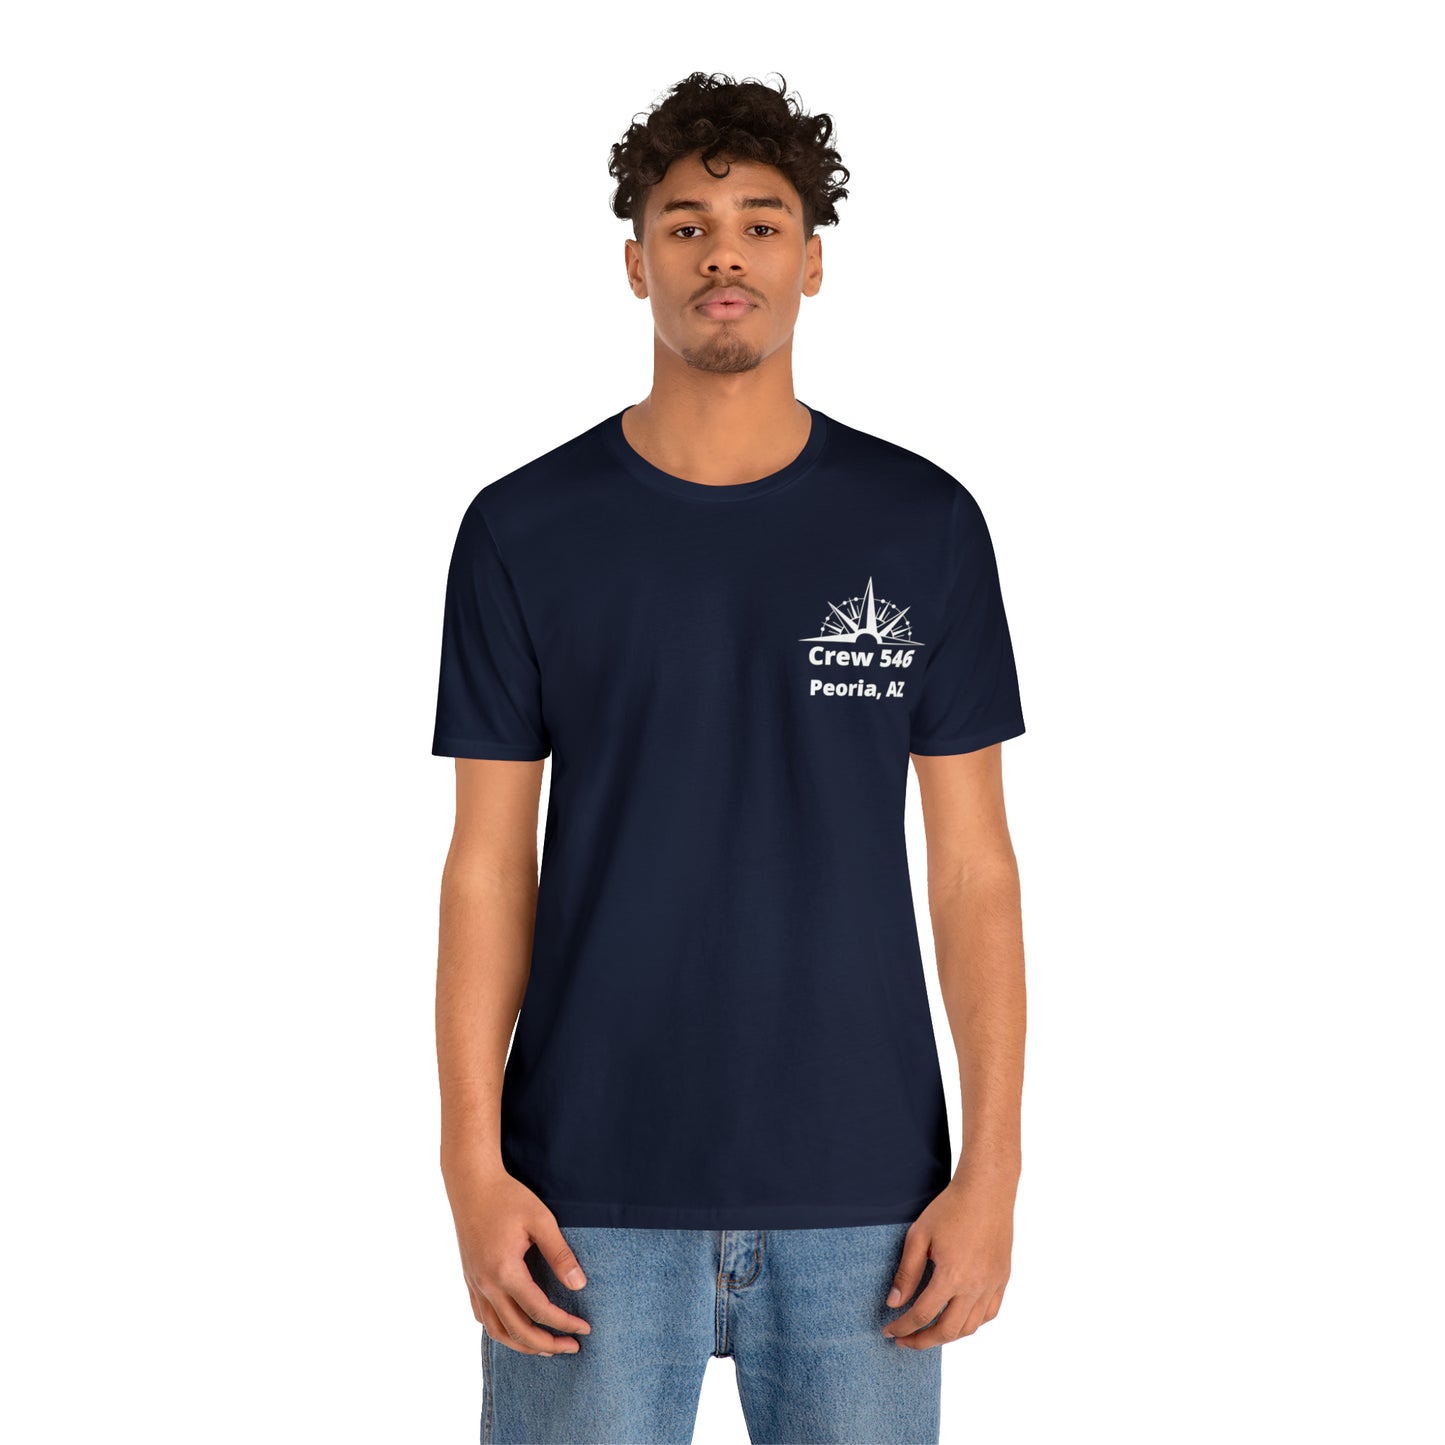 Crew 546 - Unisex Softstyle T-Shirt